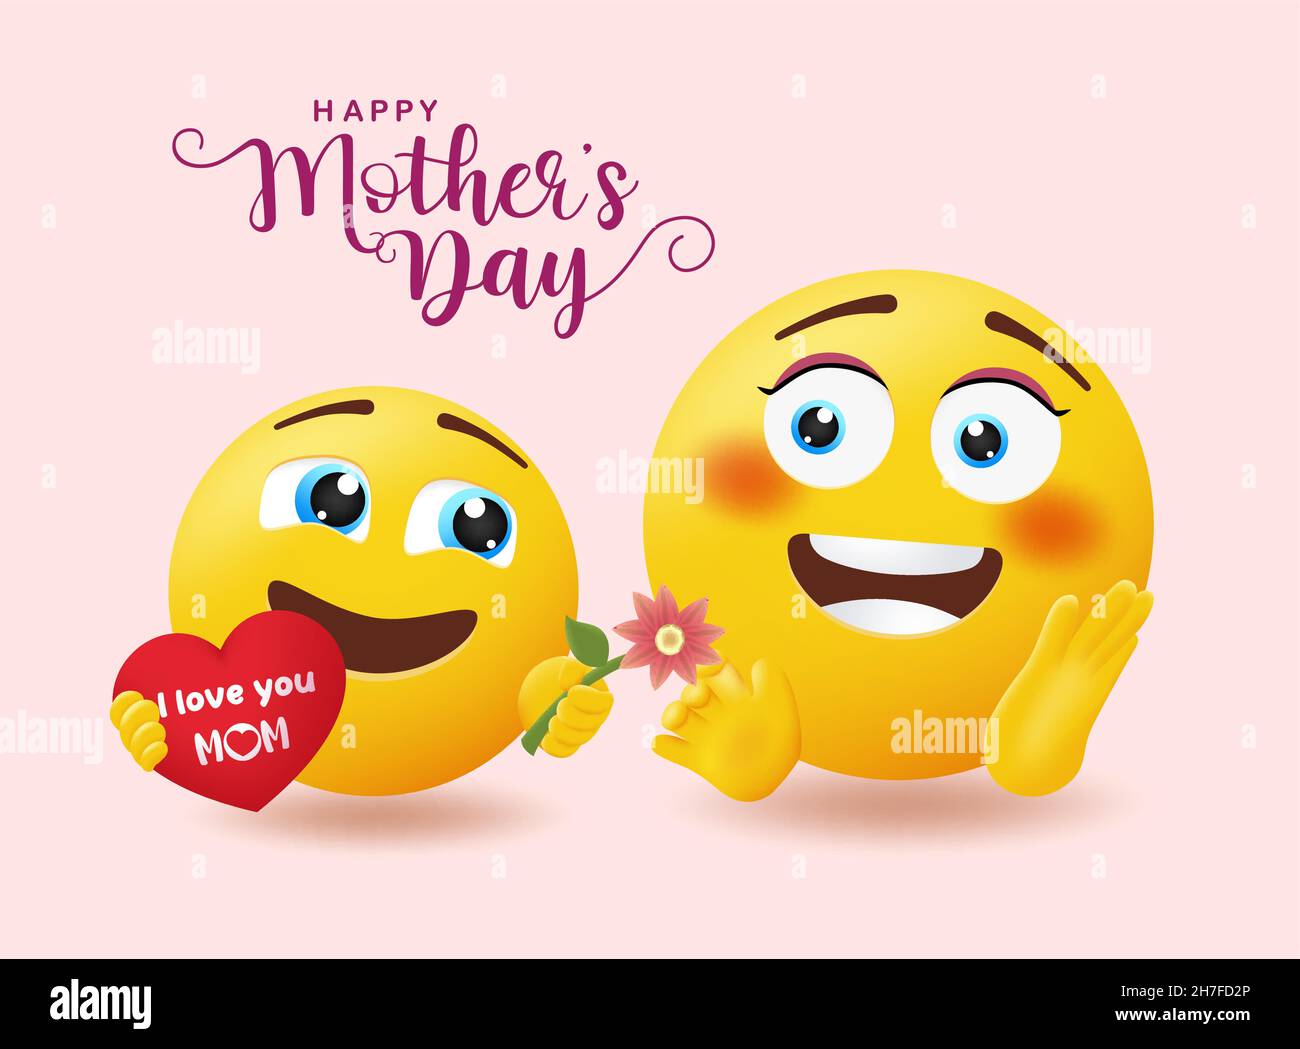 Smiley Muttertag Gruß Vektor-Design. Happy Mothers Day Text mit Emoticon Kind geben Blume Geschenk für Mama's Day Emoji Feier präsent. Stock Vektor